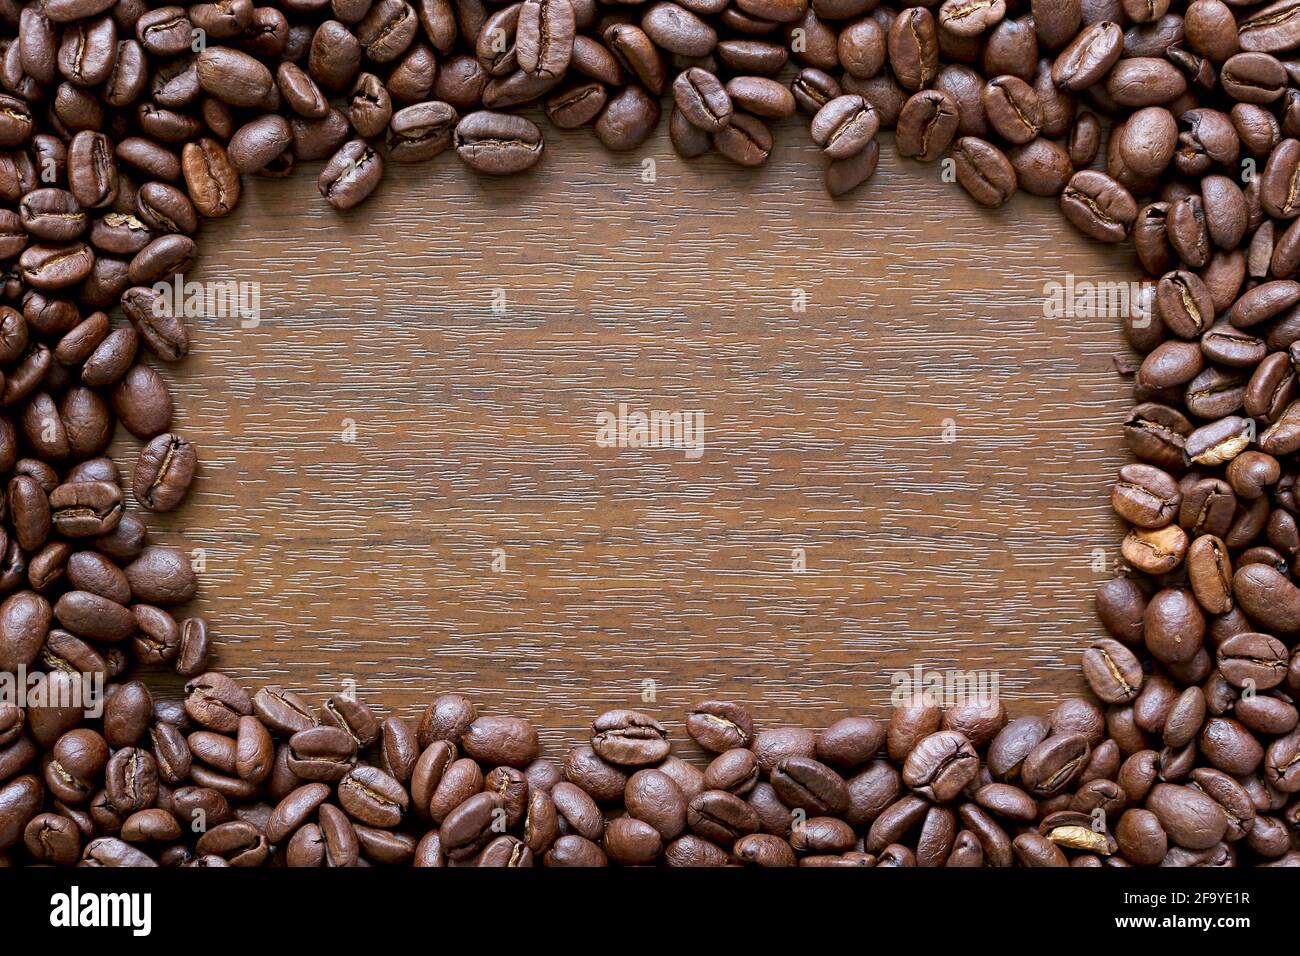 Marco de café. Borde compuesto de granos de café alrededor de un fondo de efecto de madera Foto de stock